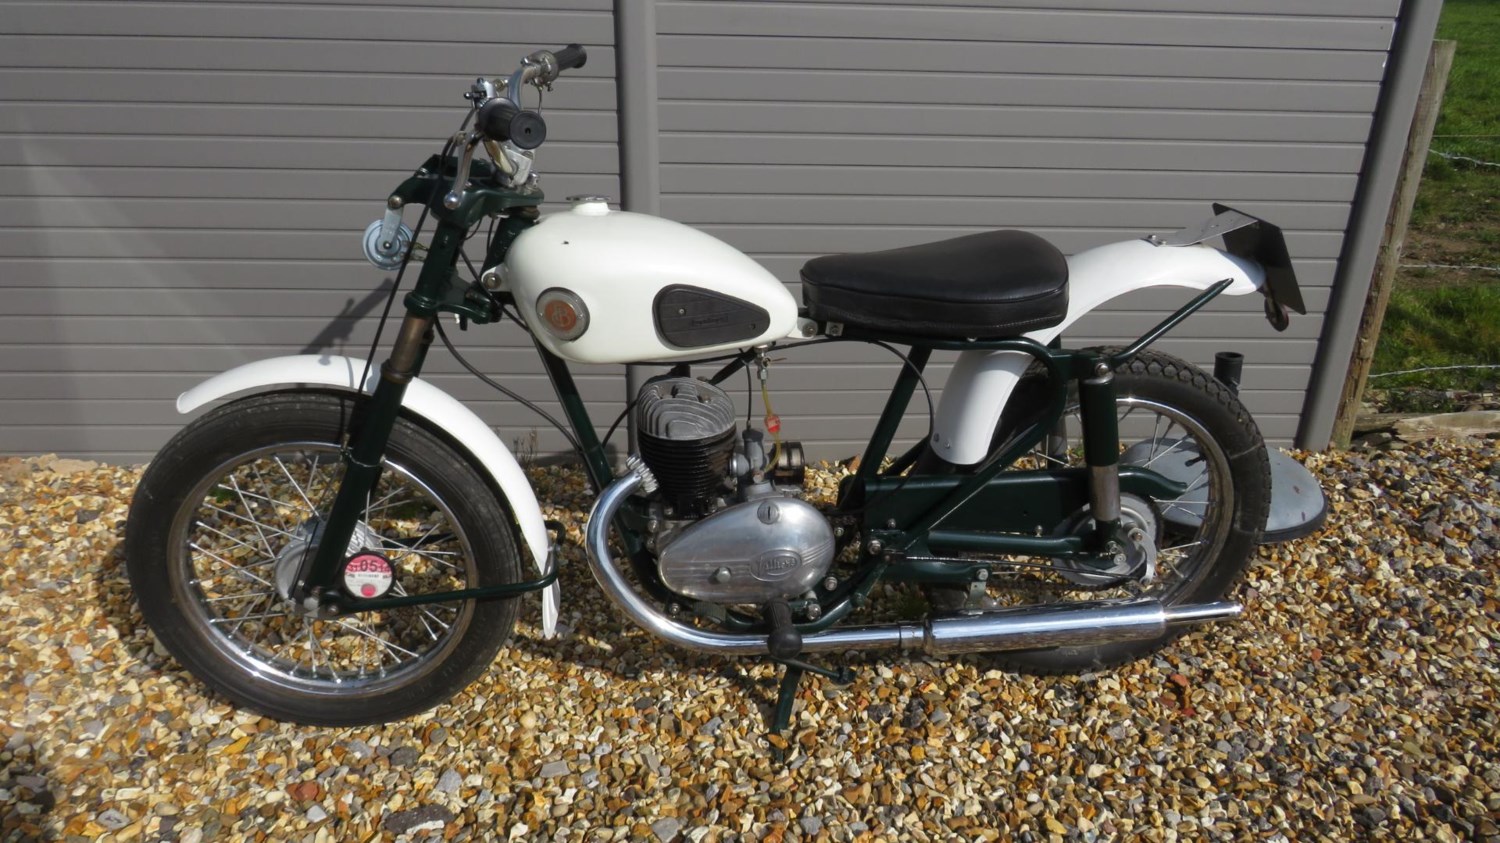 1957 (m) Francis Barnett Falcon 200 For Sale In Lymington, Hampshire